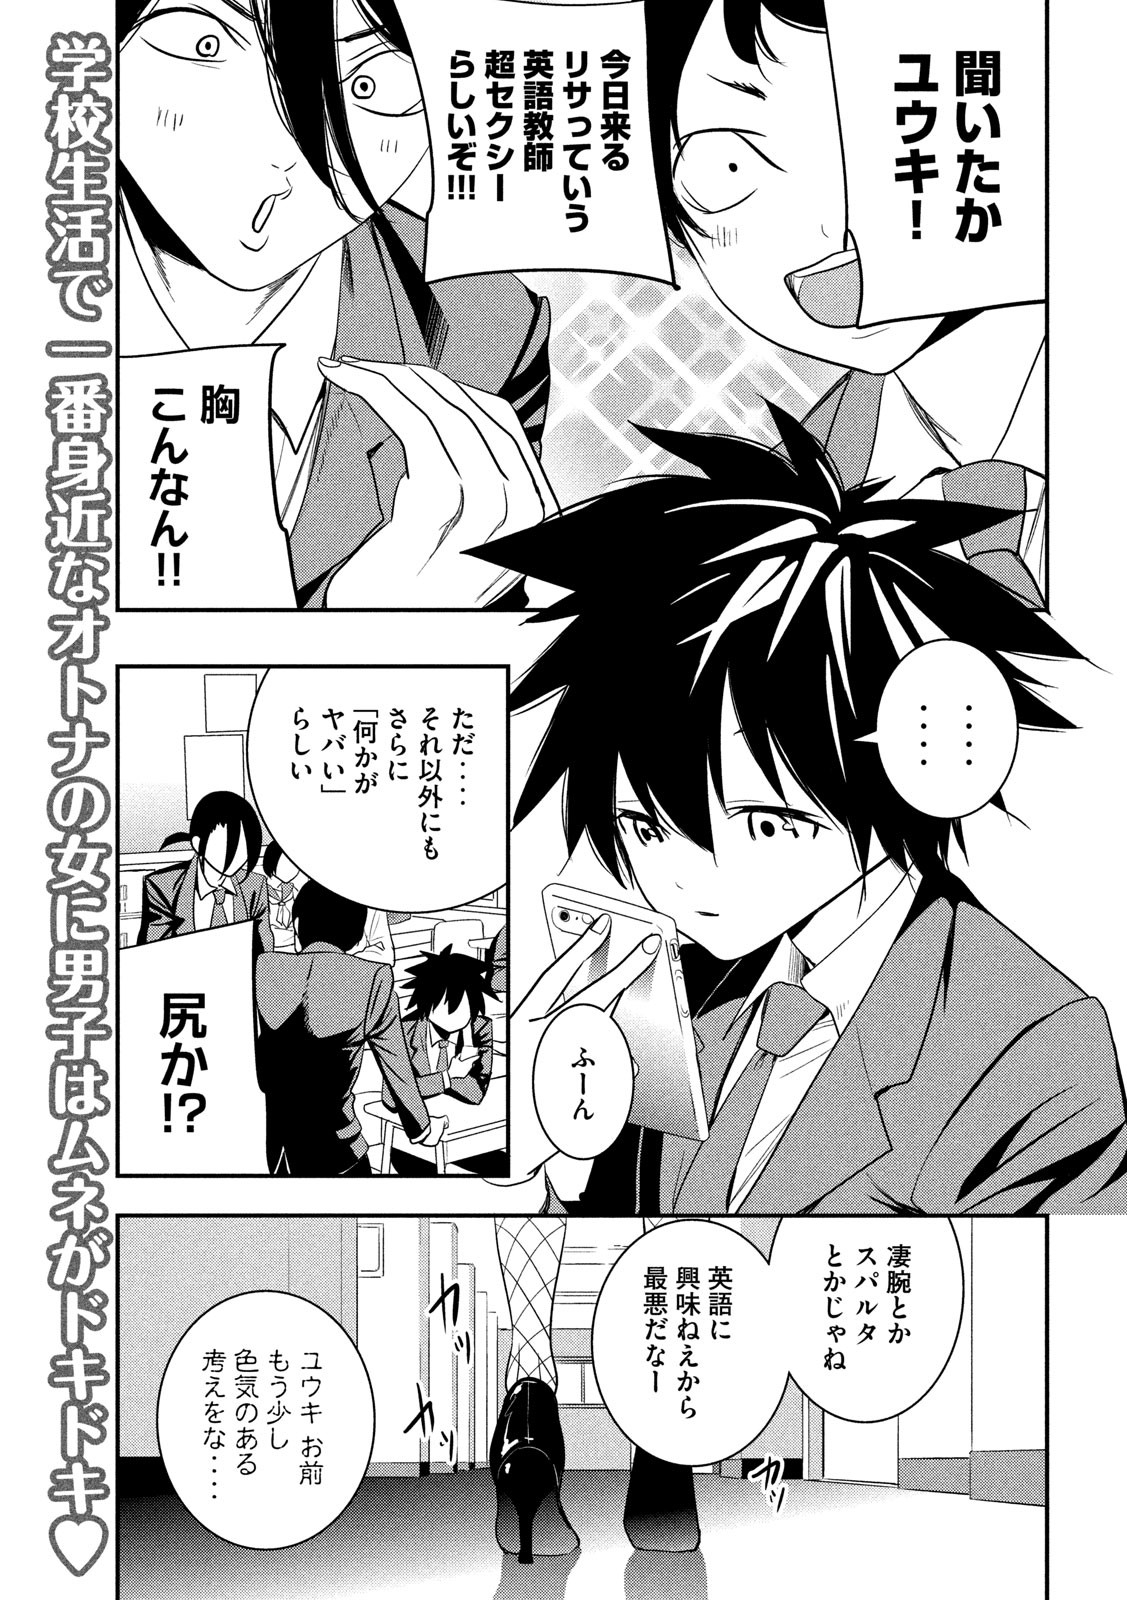 Eigo ×× Sensei - Chapter 1 - Page 2